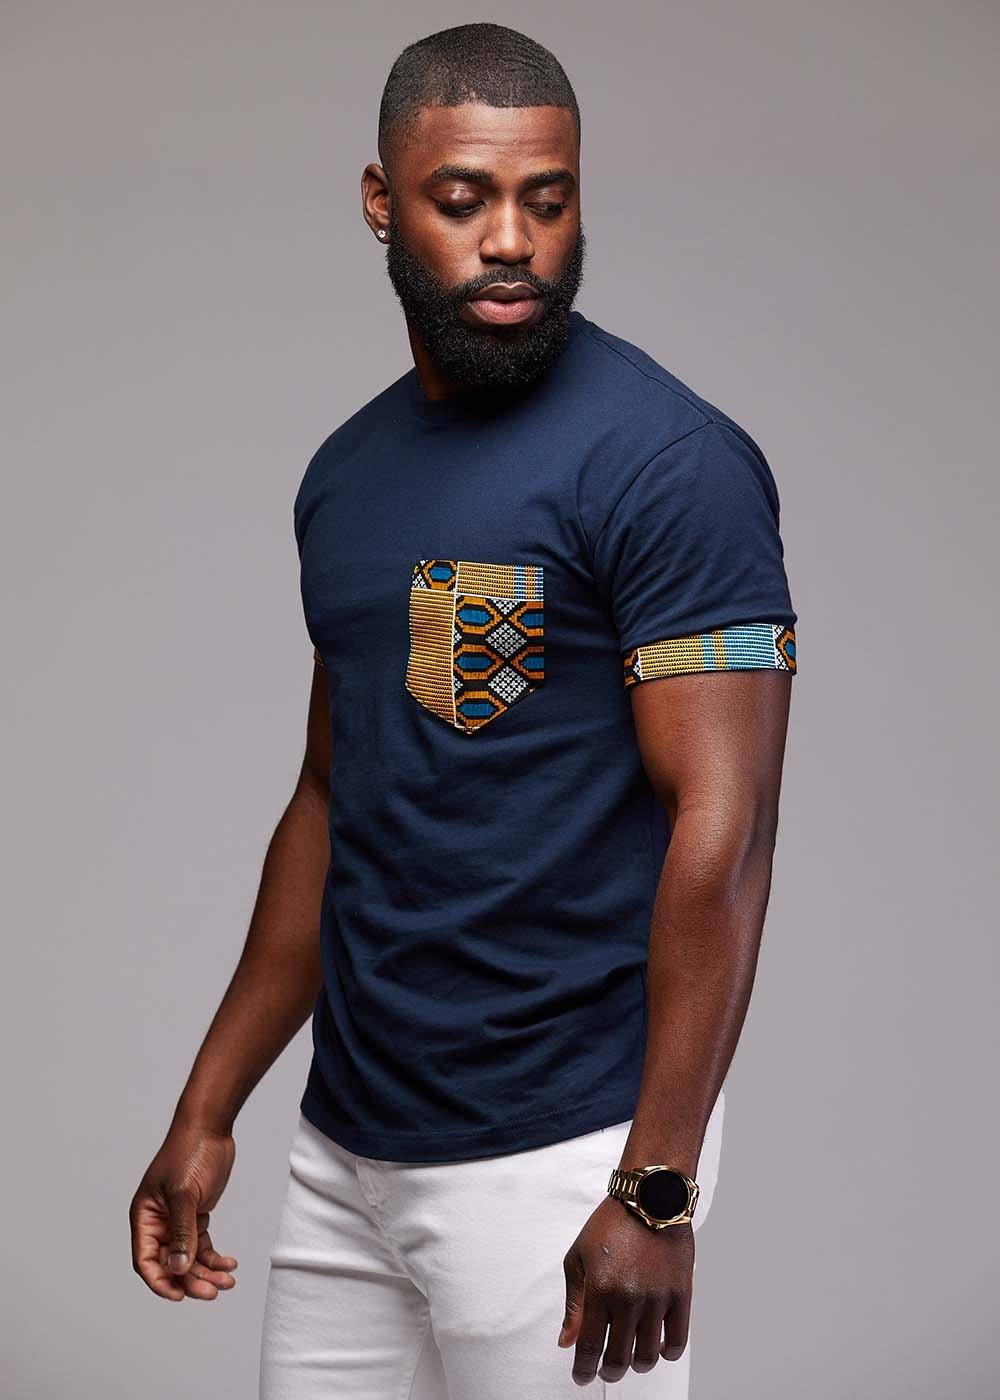 Seun Men's African Print T-Shirt with Pocket (Blue/Tan Navy)